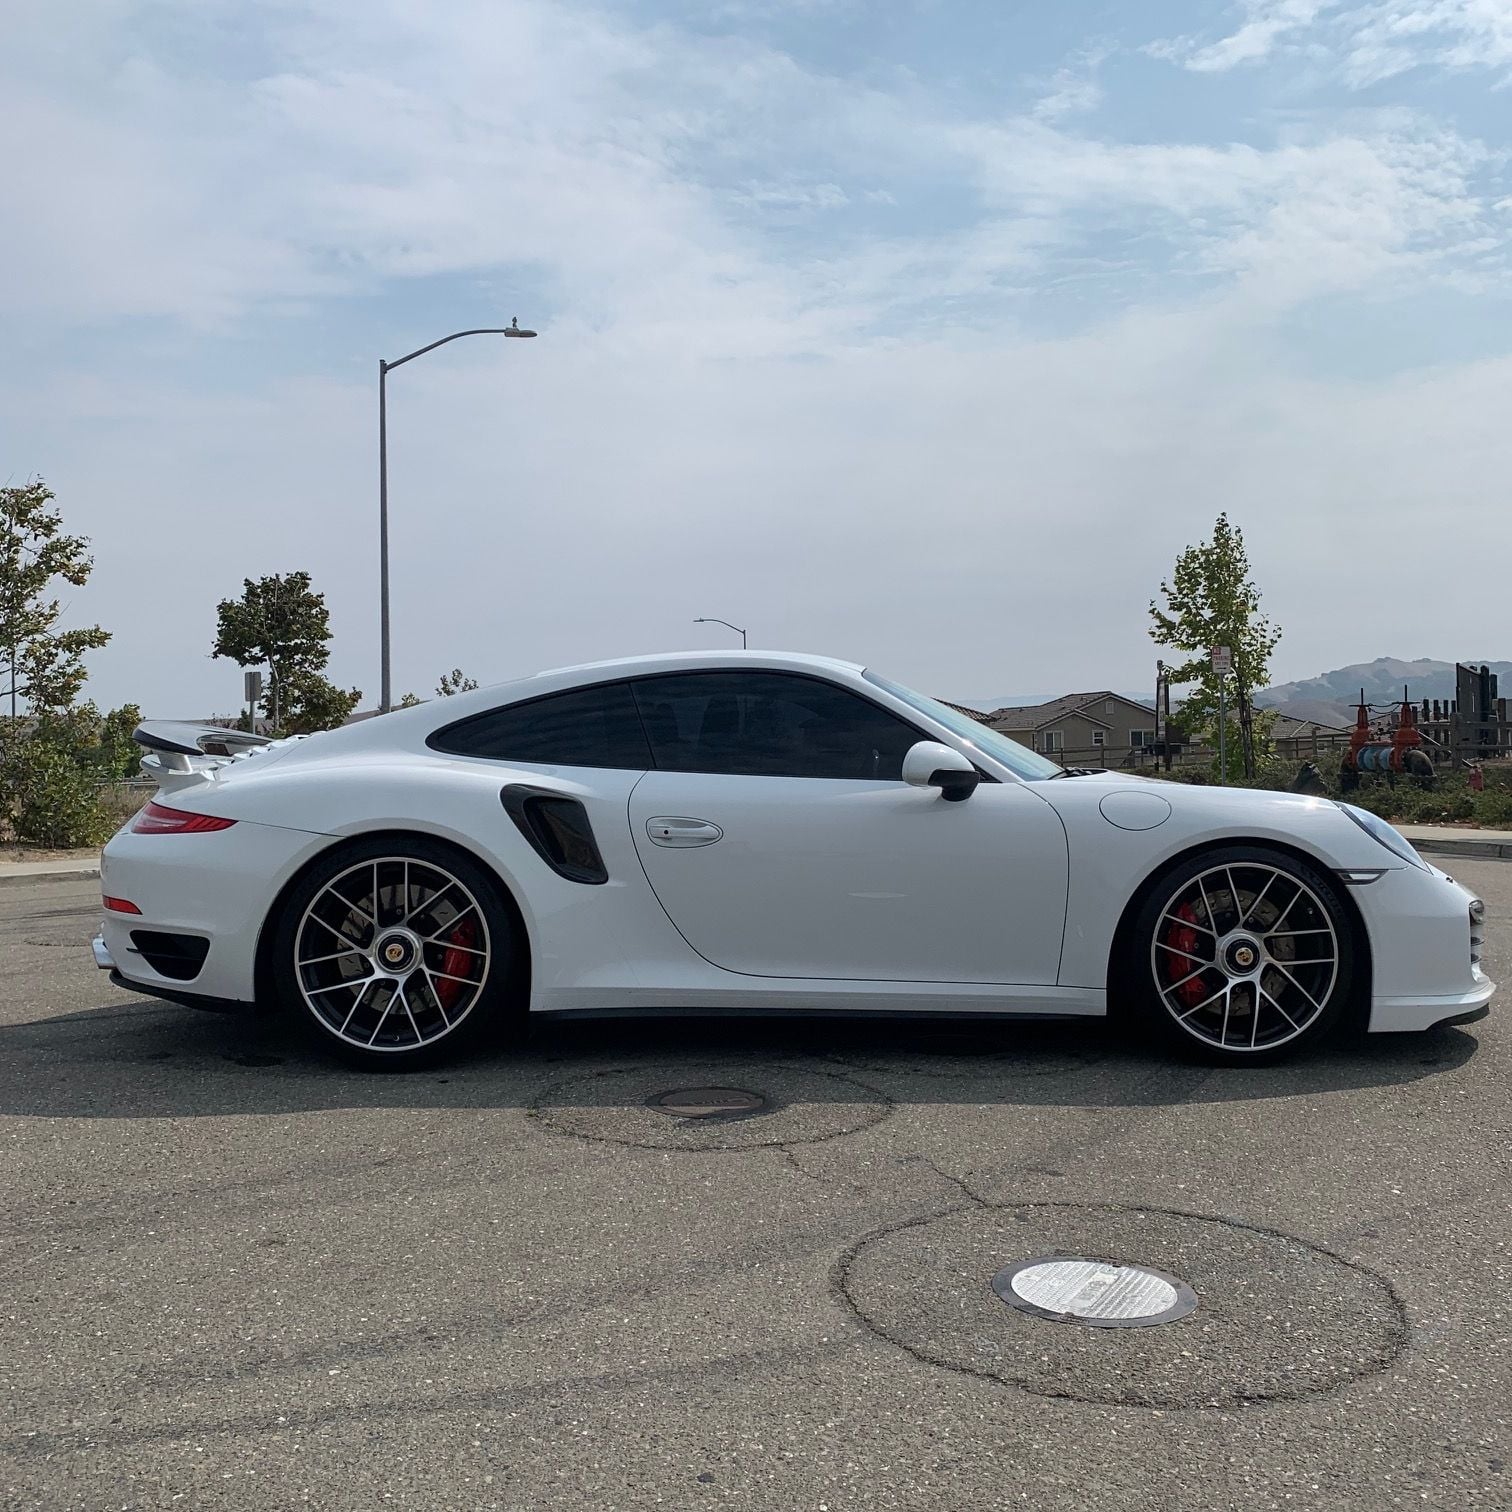 2014 Porsche 911 - 2014 Porsche 911 Turbo Carrera White - Used - VIN WP0AD2A97ES166609 - 20,550 Miles - 6 cyl - AWD - Automatic - Coupe - White - Dublin, CA 94568, United States